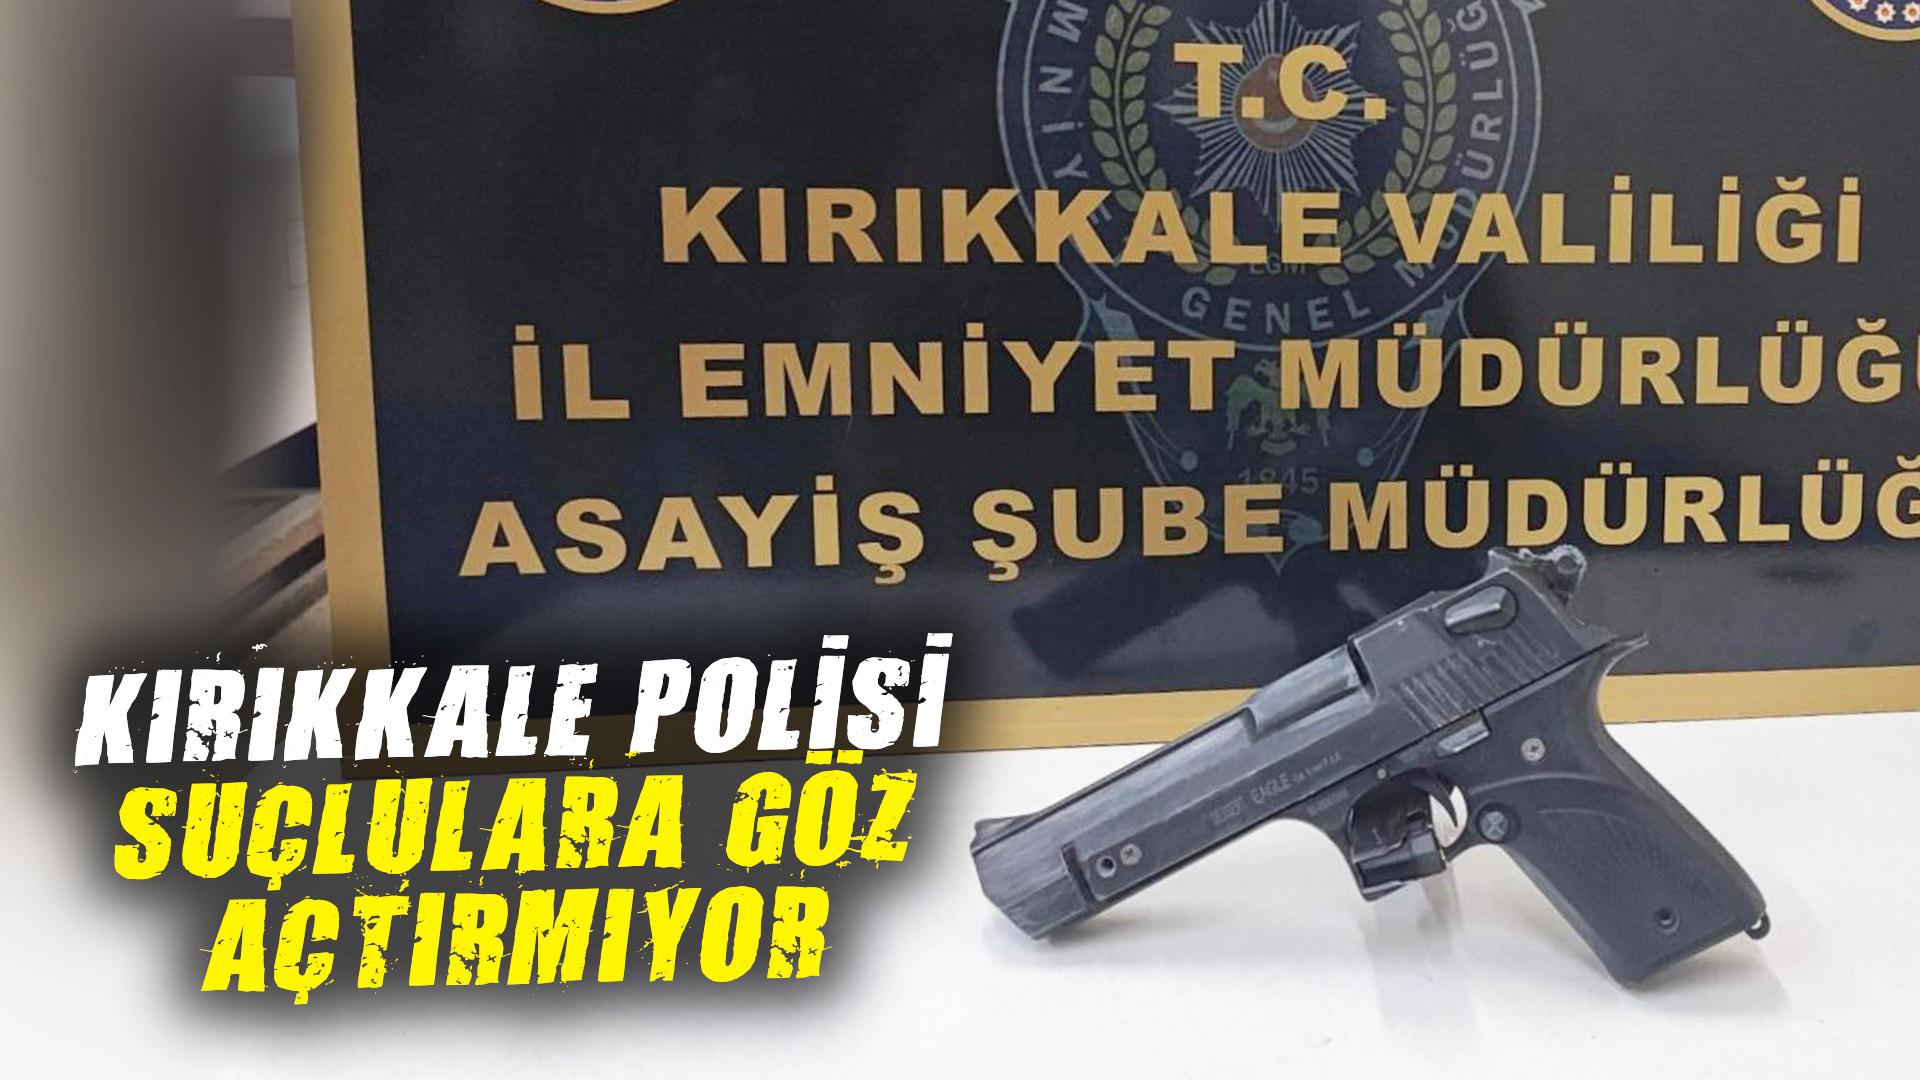 Kırıkkale polisi suçlulara göz açtırmıyor